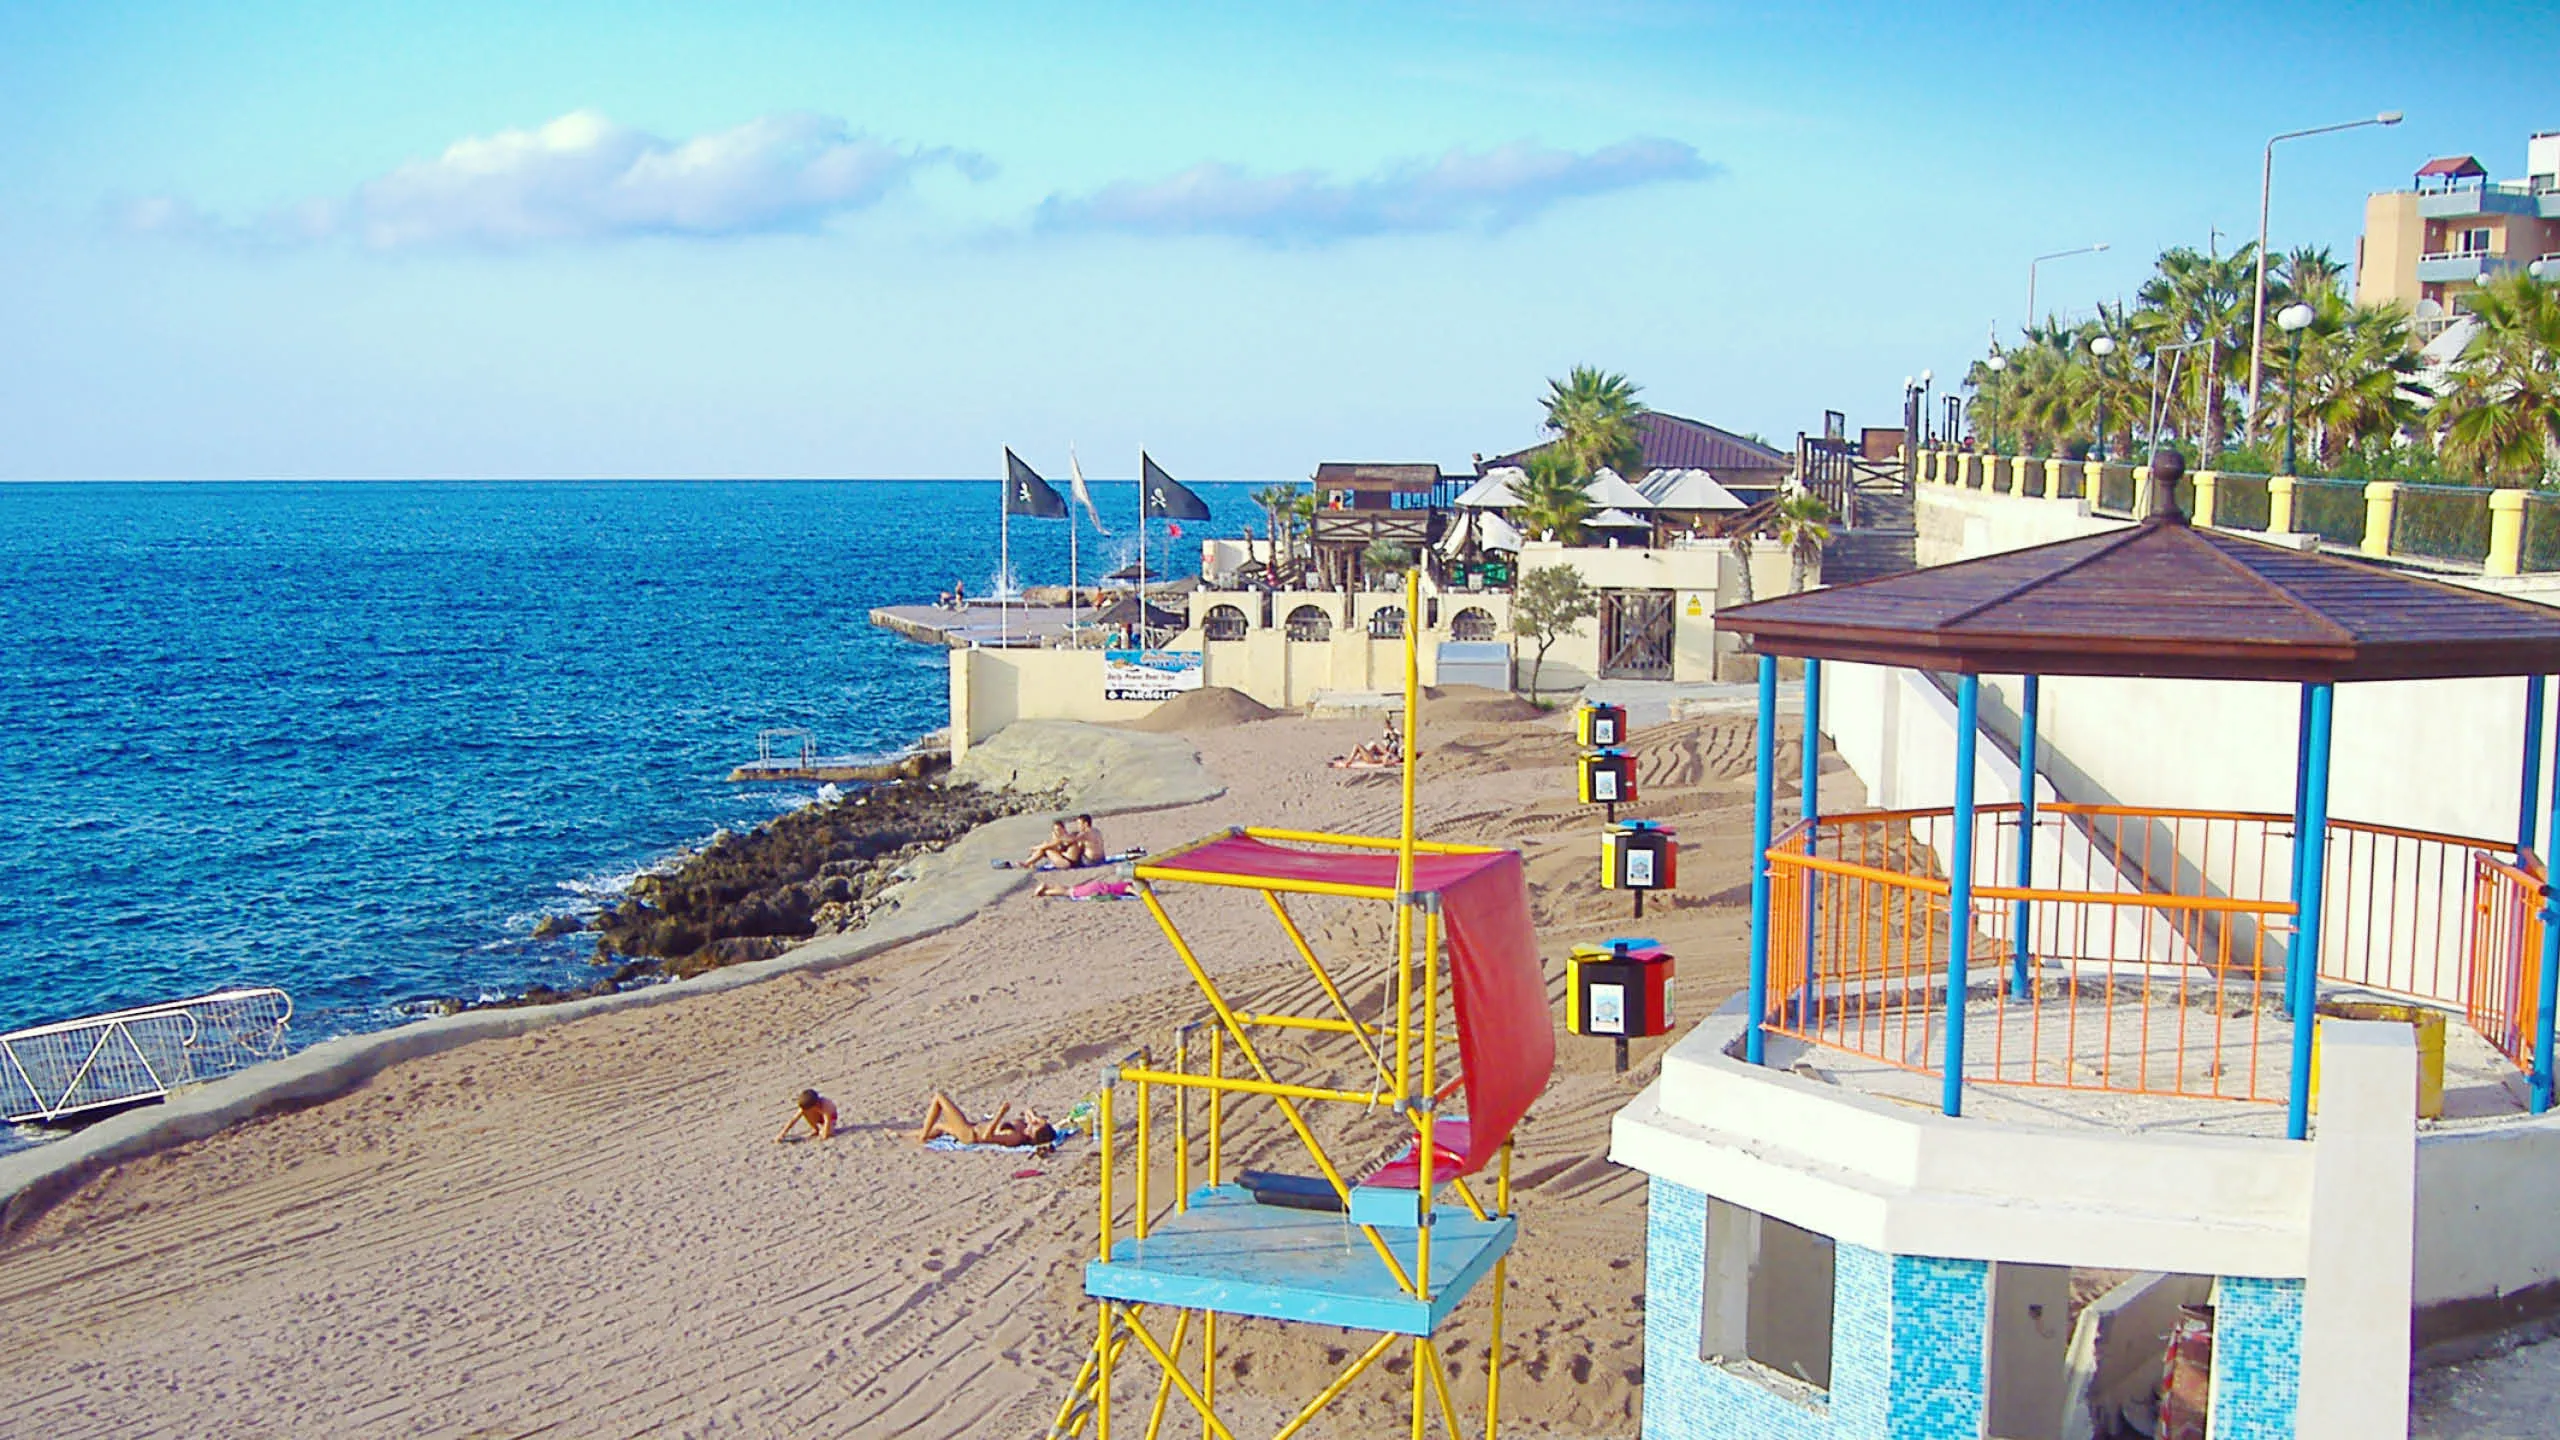 Qawra Point Beach in Malta, Europe | Beaches - Rated 3.7